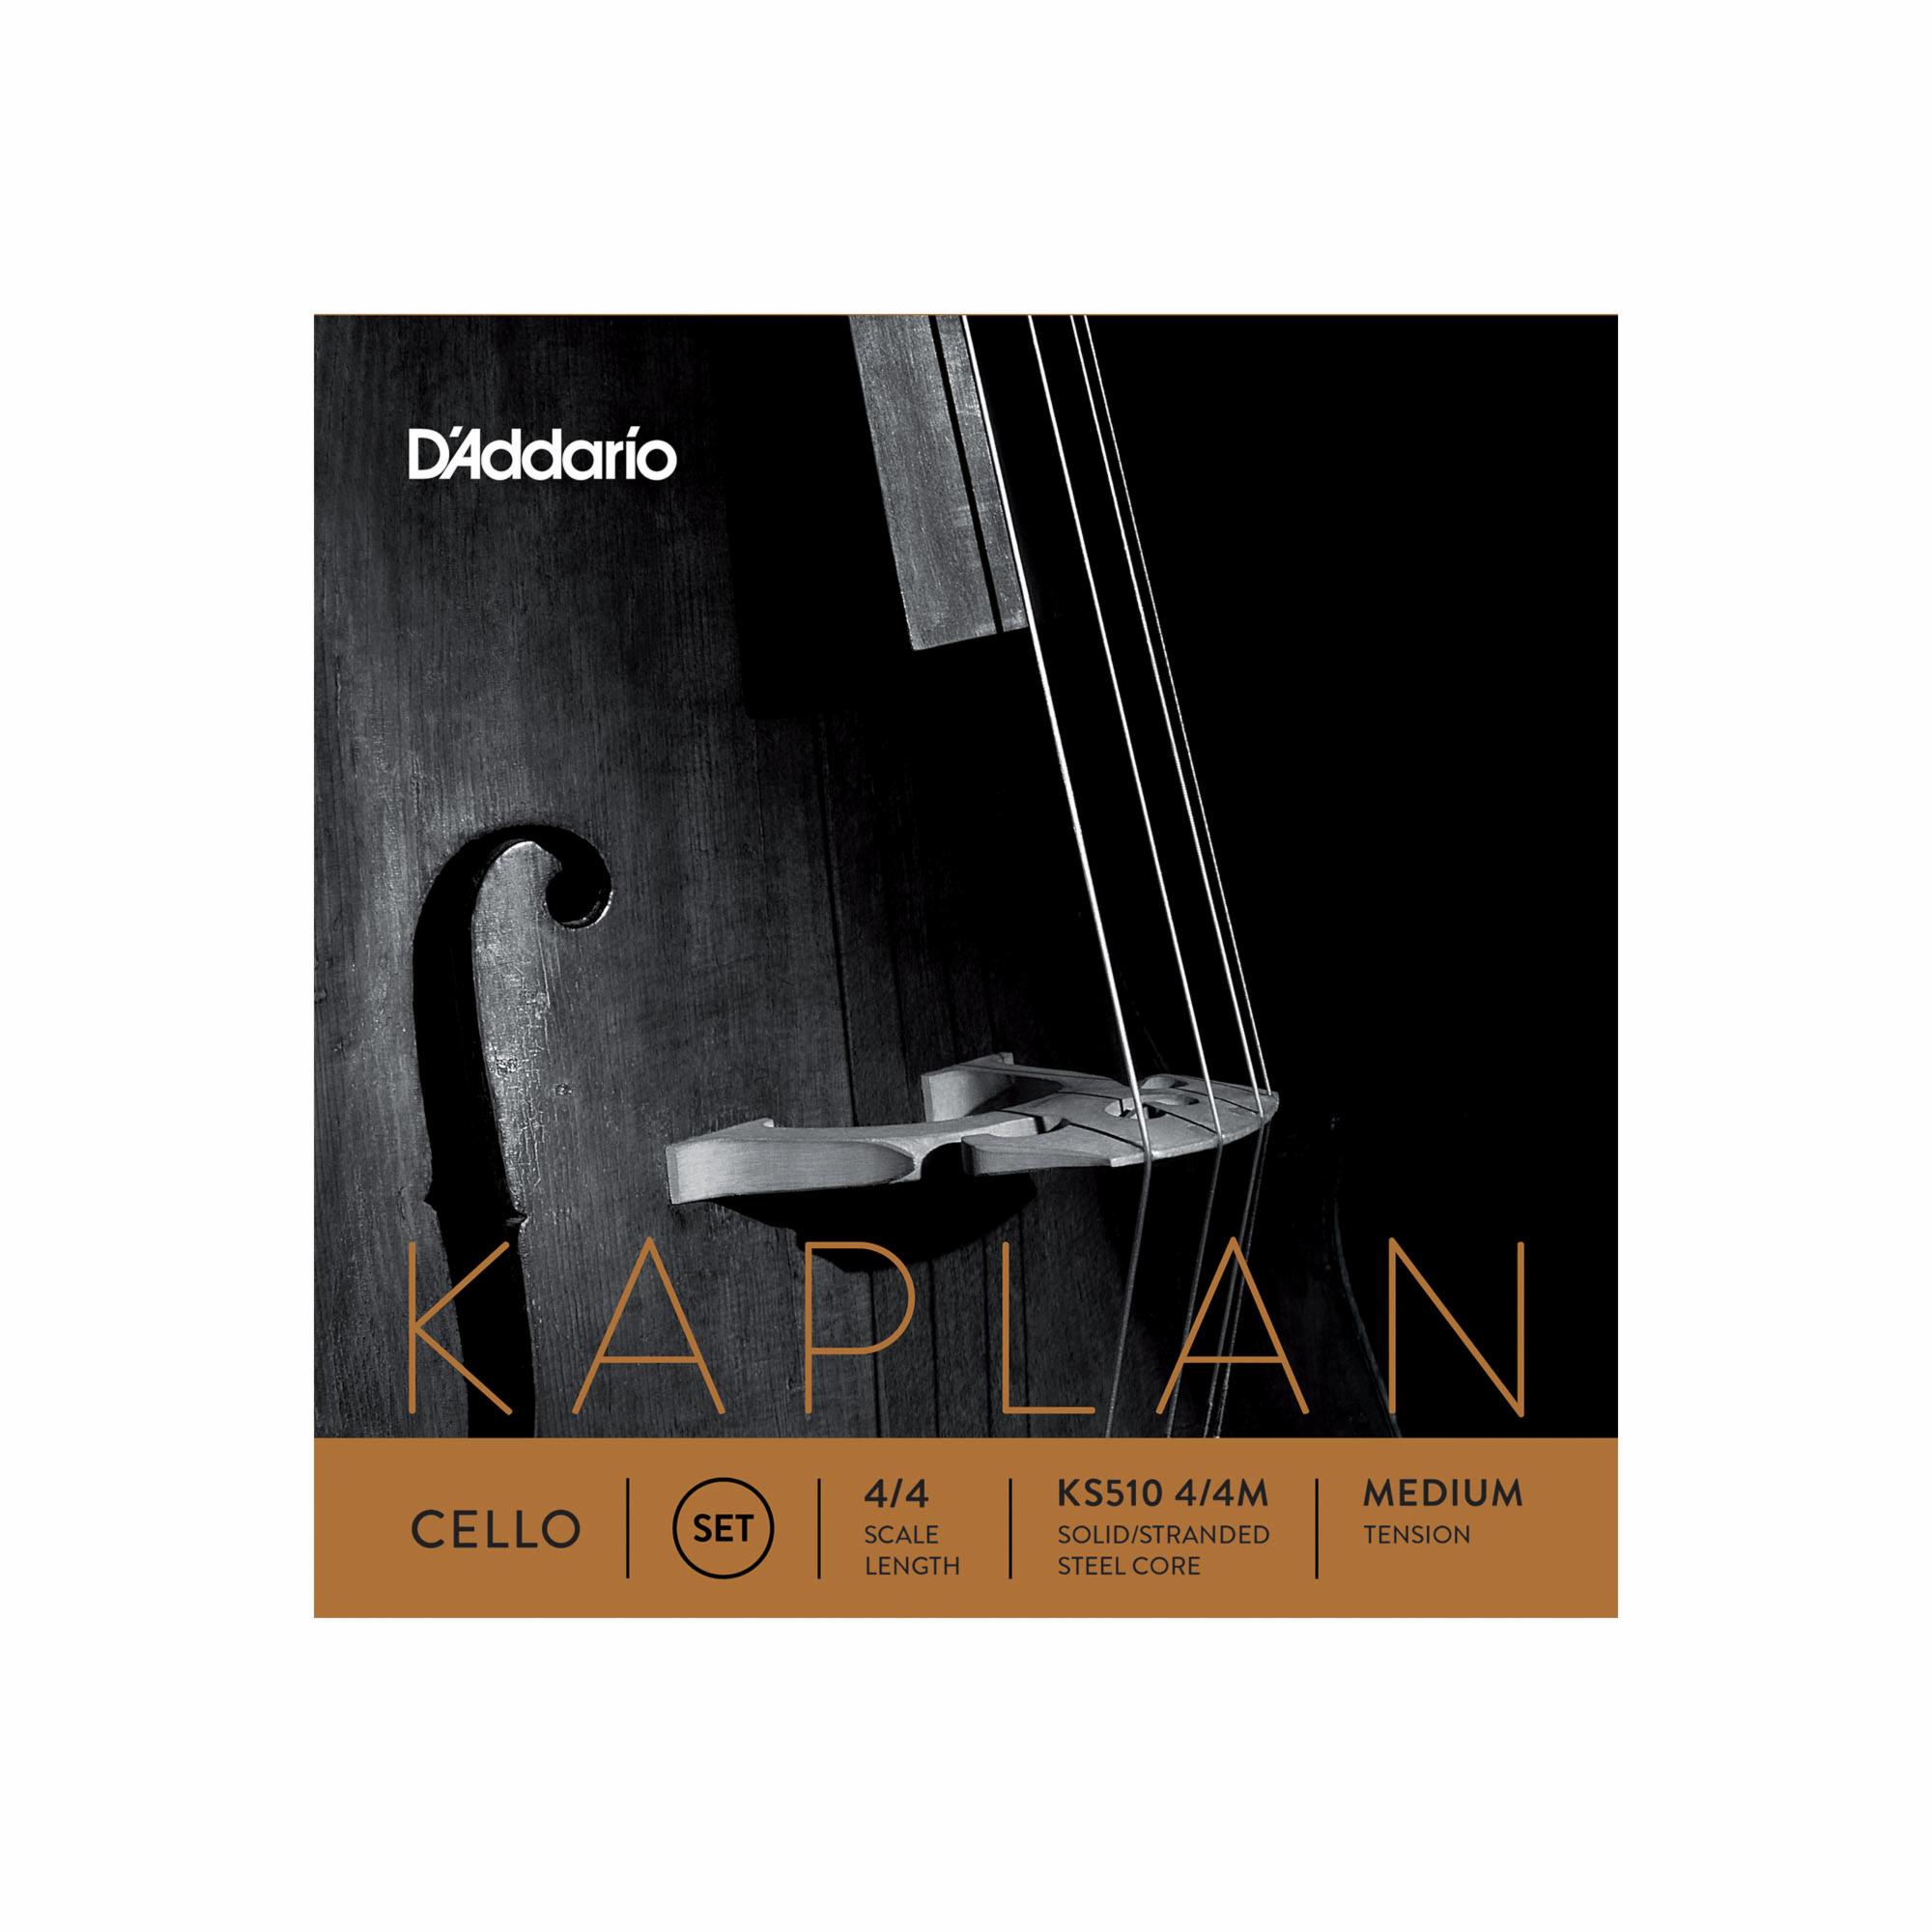 D'Addario Kaplan Cello Strings